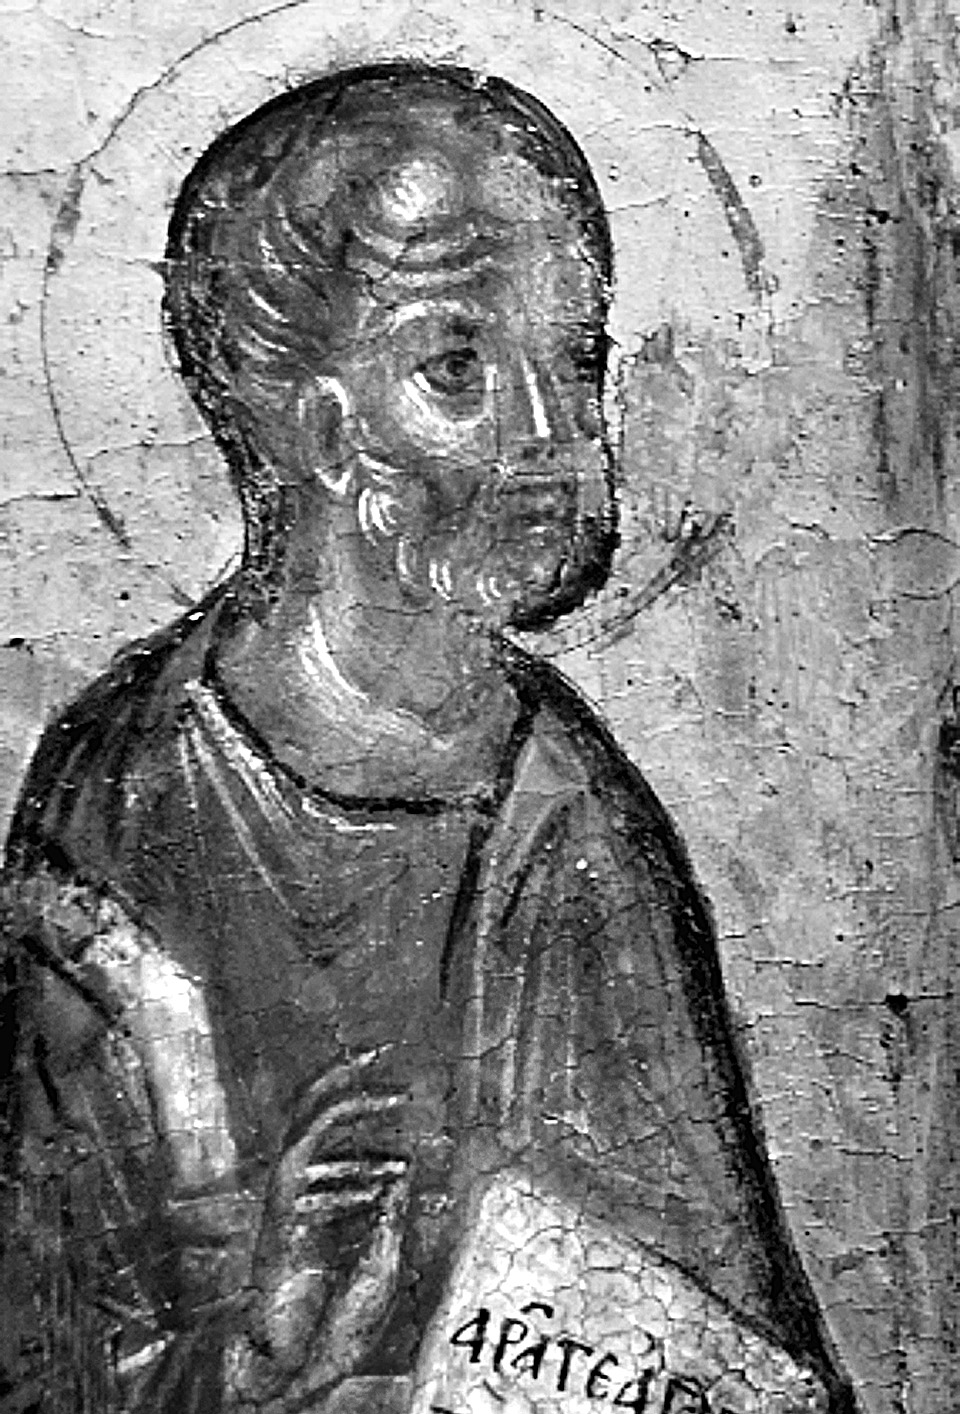 Η ΠΑΛΑΙΟΛΟΓΕΙΑ ΕΙΚΟΝΑ ΤΟΥ ΧΡΙΣΤΟΥ ἘN ΔΟΞῌ ΣΤΟ ΜΟΥΣΕΙΟ ΤΗΣ ΒΕΝΕΤΙΑΣ Εικ. 6. Βενετία, Μουσείο Εικόνων. Ο Σίμων, λεπτομέρεια της Εικ. 1. Εικ. 7. Σερβία, Manasijia, ναός Αγίας Τριάδας.